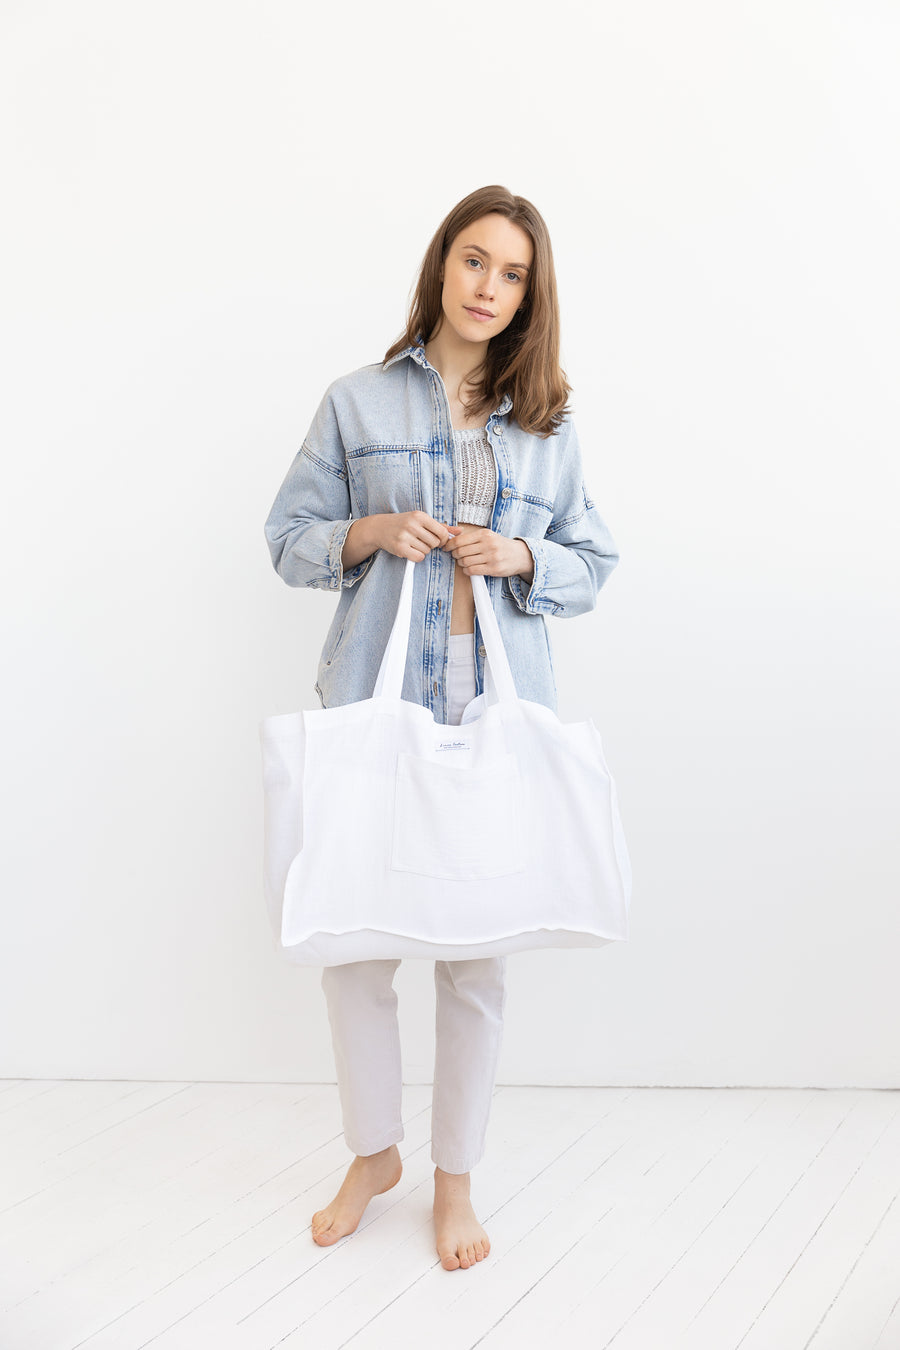 White linen beach bag - Linen Couture Boutique